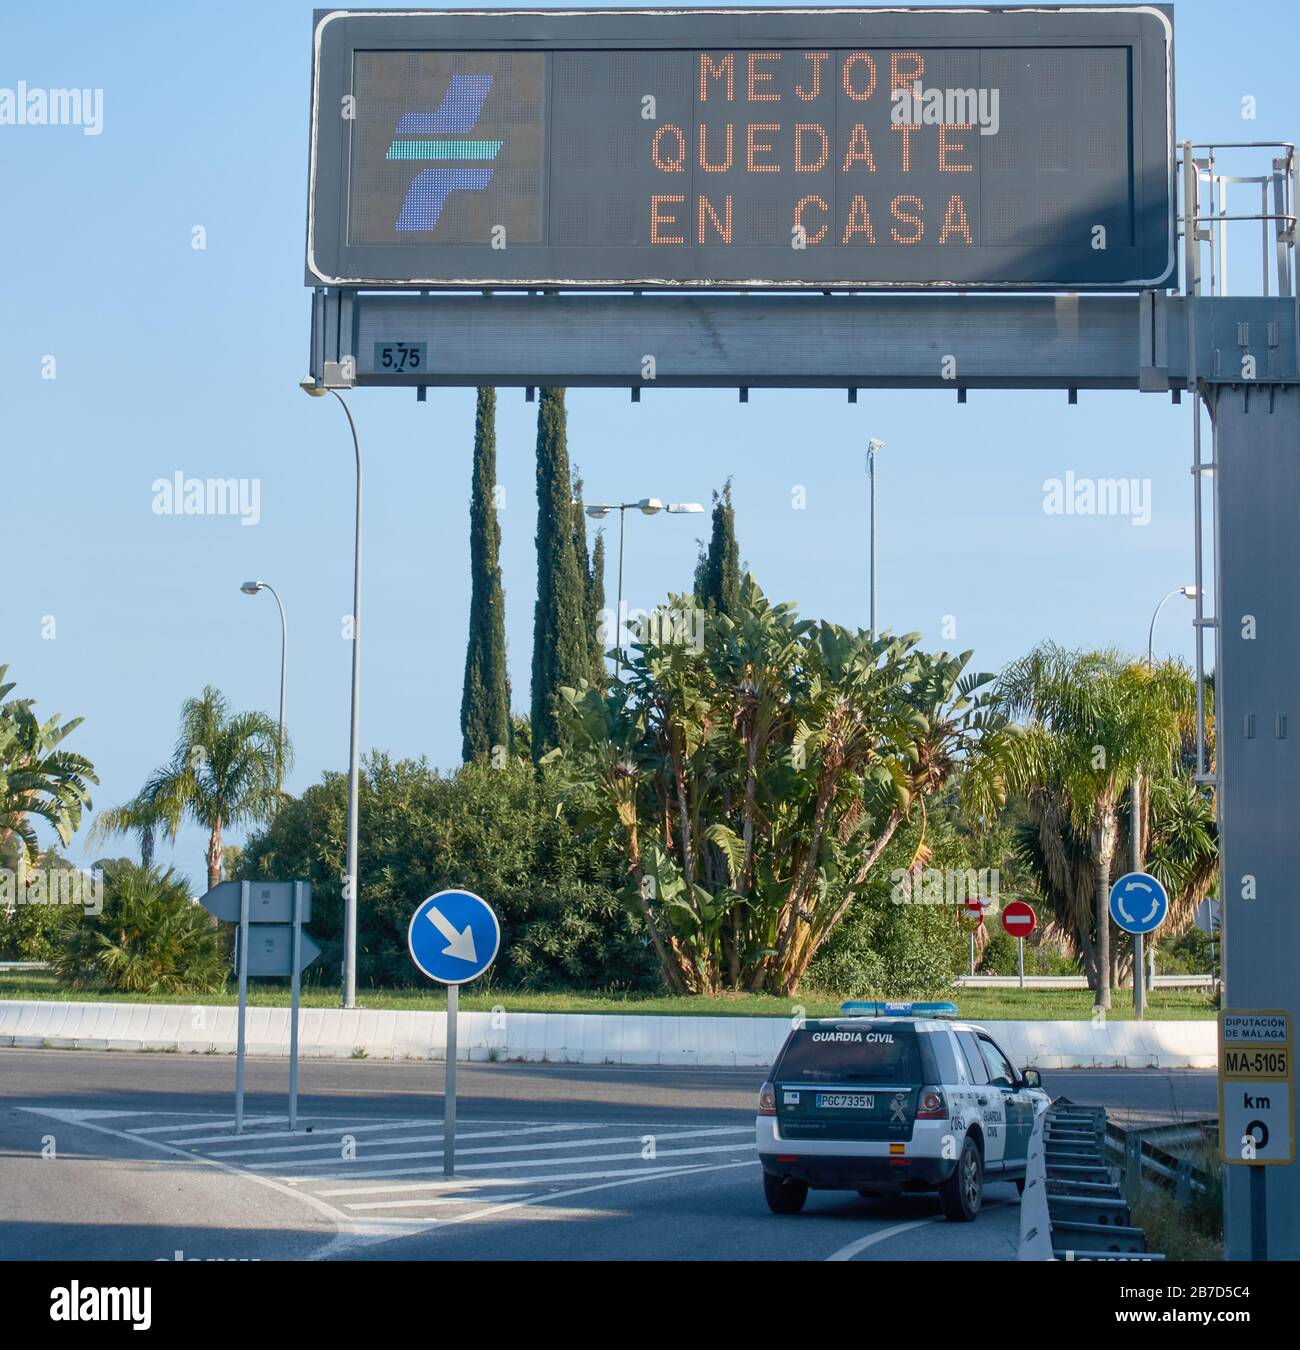 Un veicolo della Guardia civile spagnola passa sotto un cartello che suggerisce ´è´s meglio rimanere a casa´ all’inizio della pandemia del coronavirus, Malaga, Spagna Foto Stock